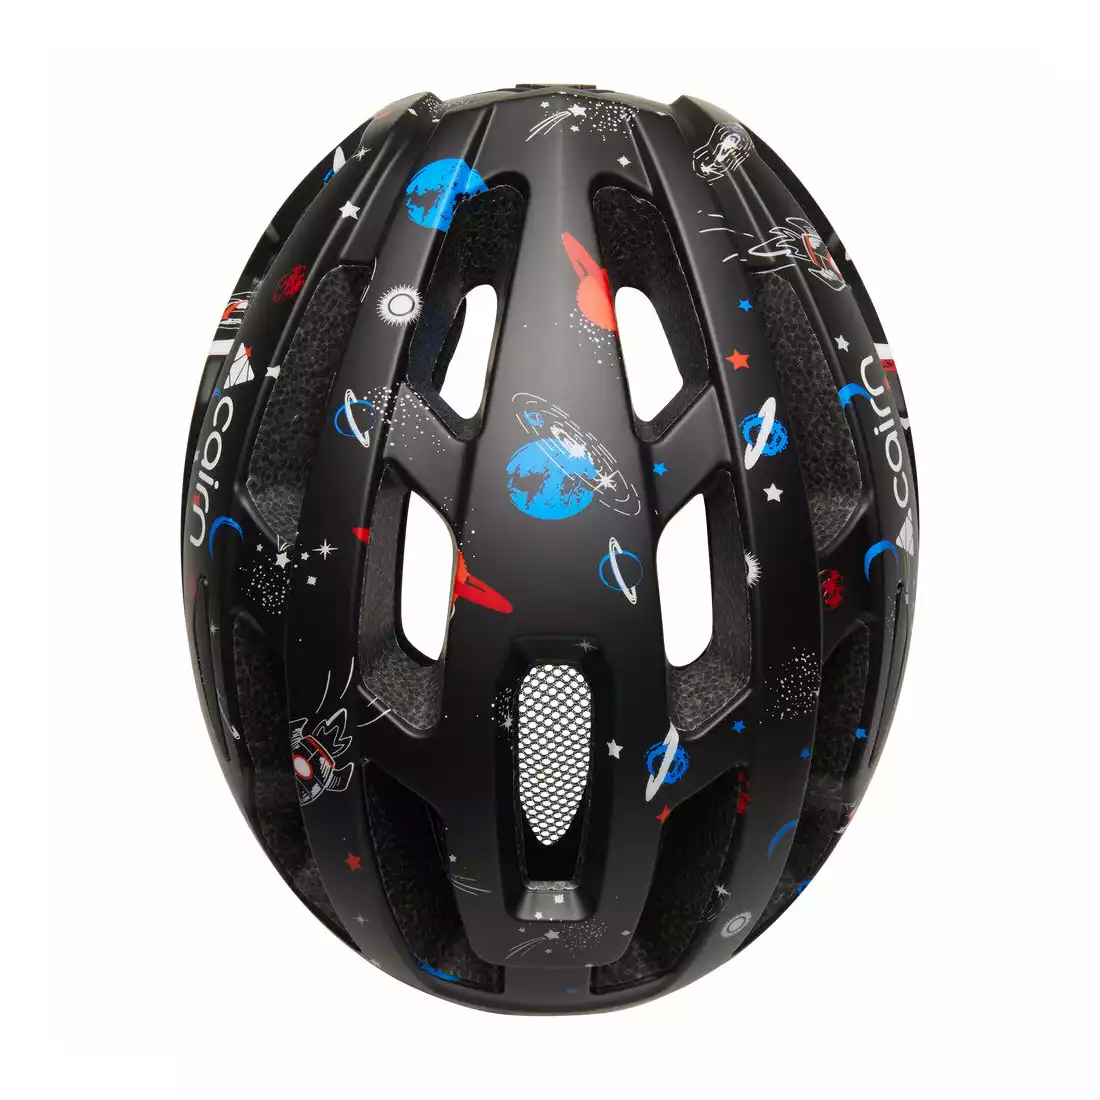 CAIRN PRISM II J Children's bike helmet, black